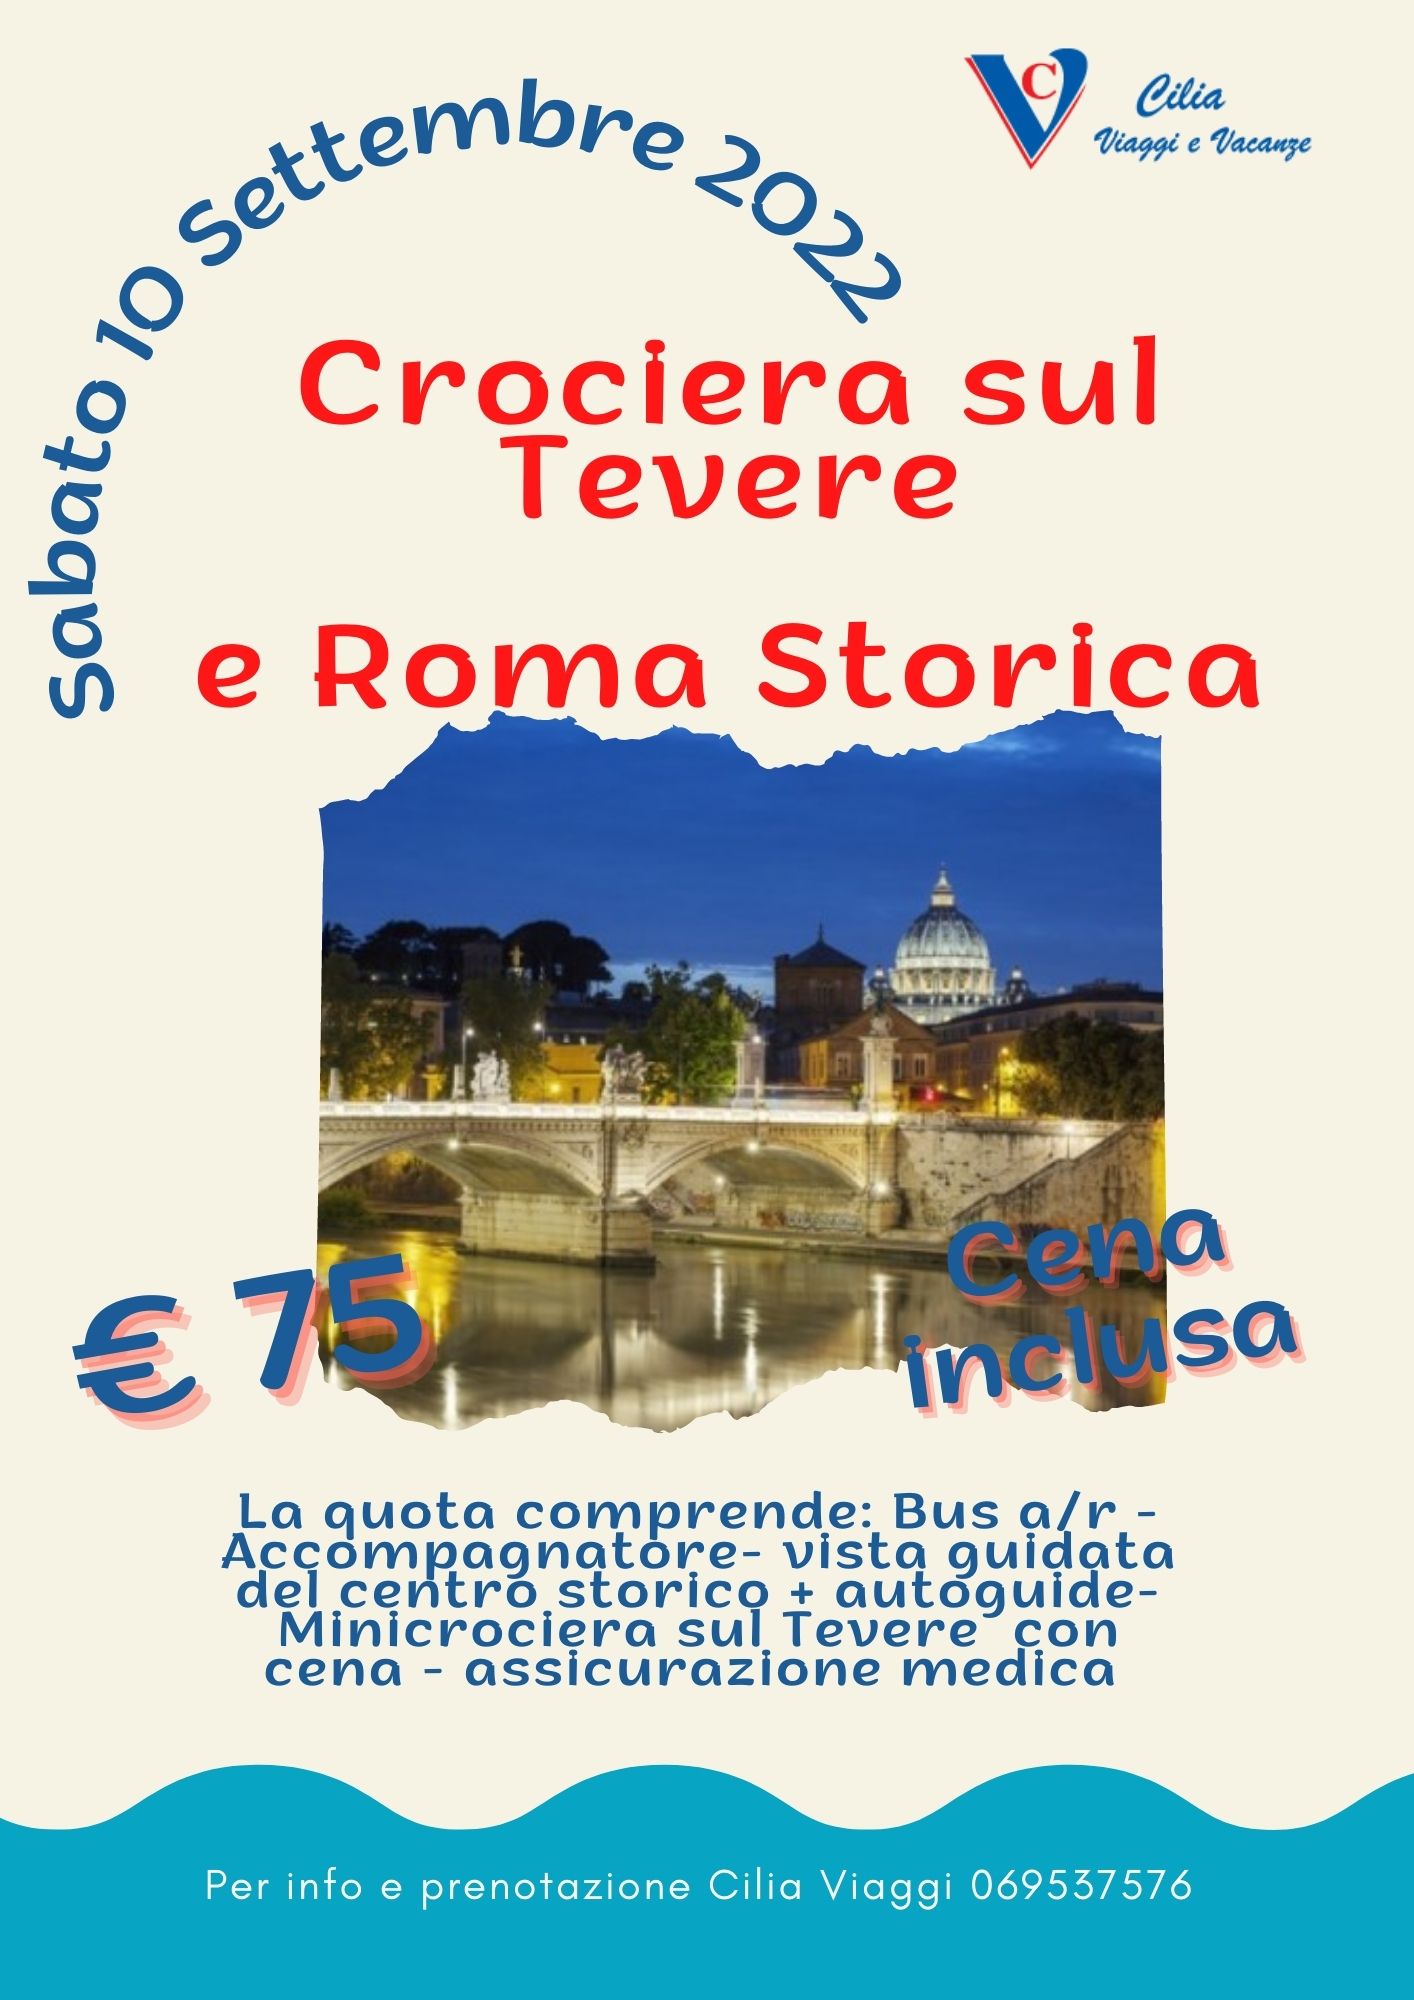 CROCIERA SUL TEVERE E ROMA STORIA<br> sabato 10 settembre <br> Euro 75,00 p.p.